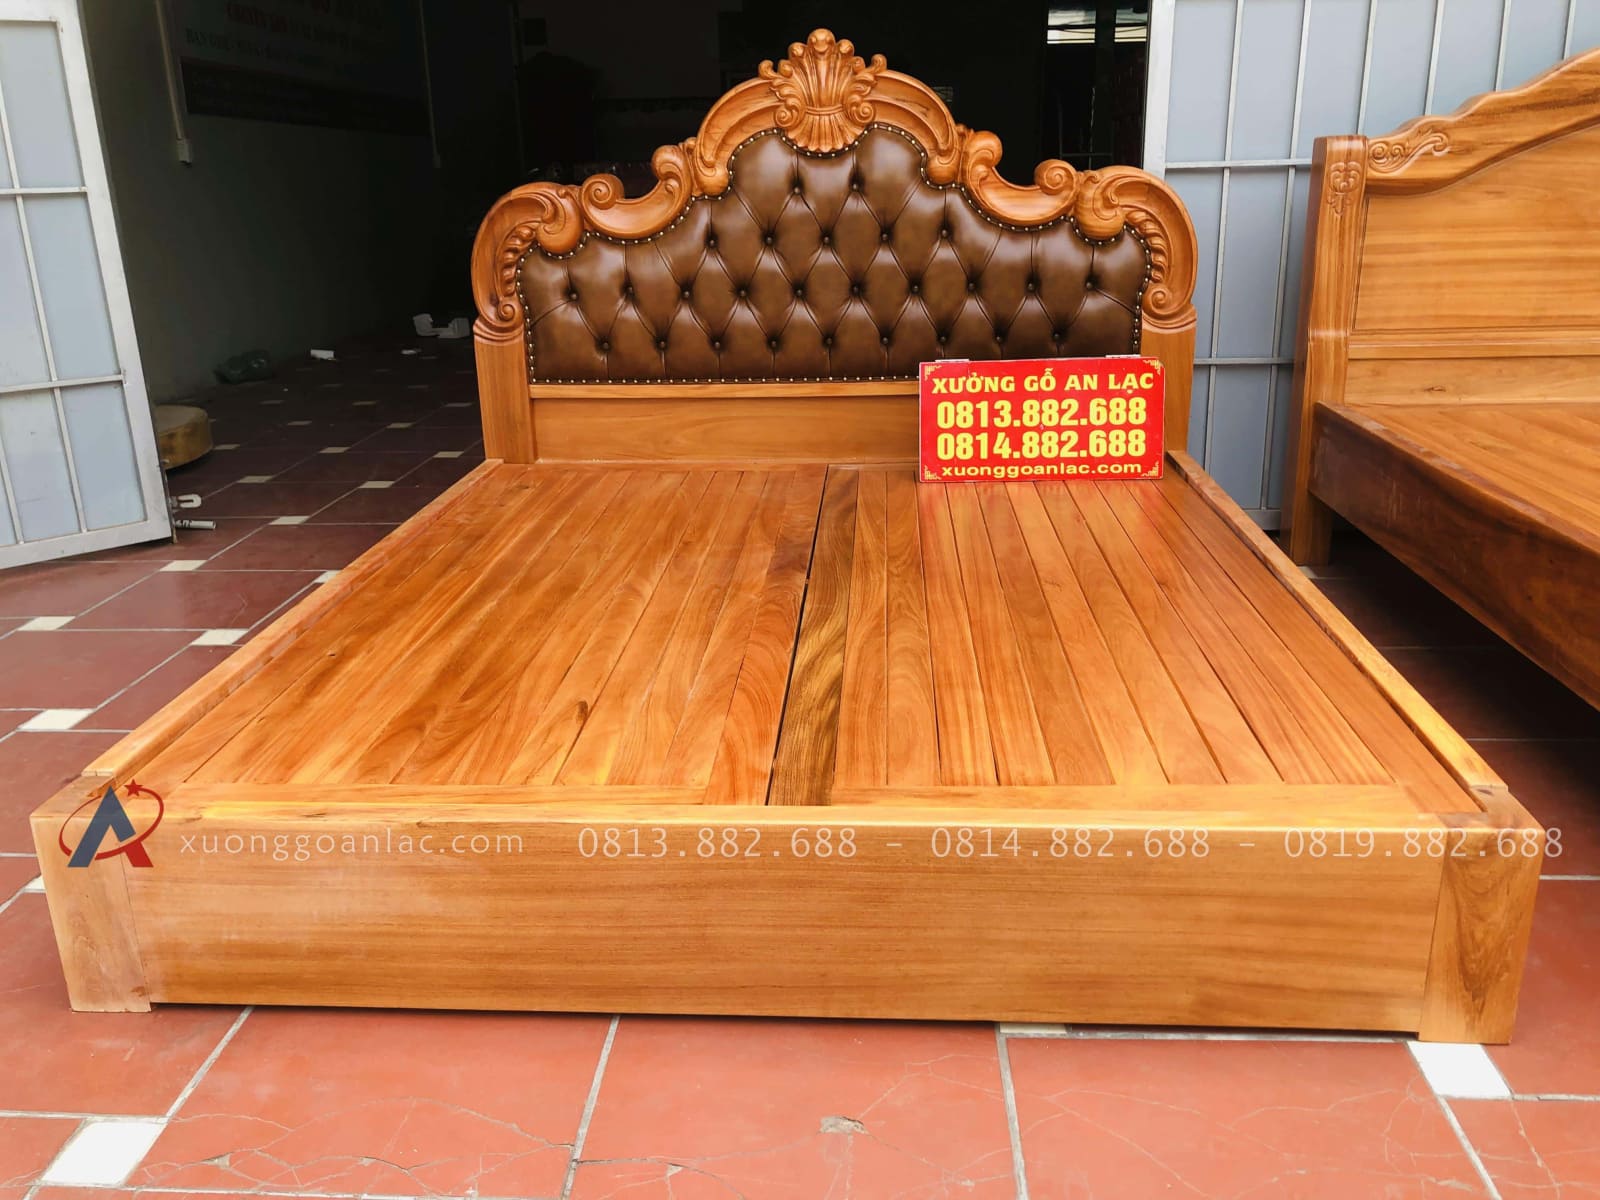 Giường ngủ cao cấp gỗ gõ đỏ 1m8x2m đầu giường bọc da bò nhập khẩu Italia